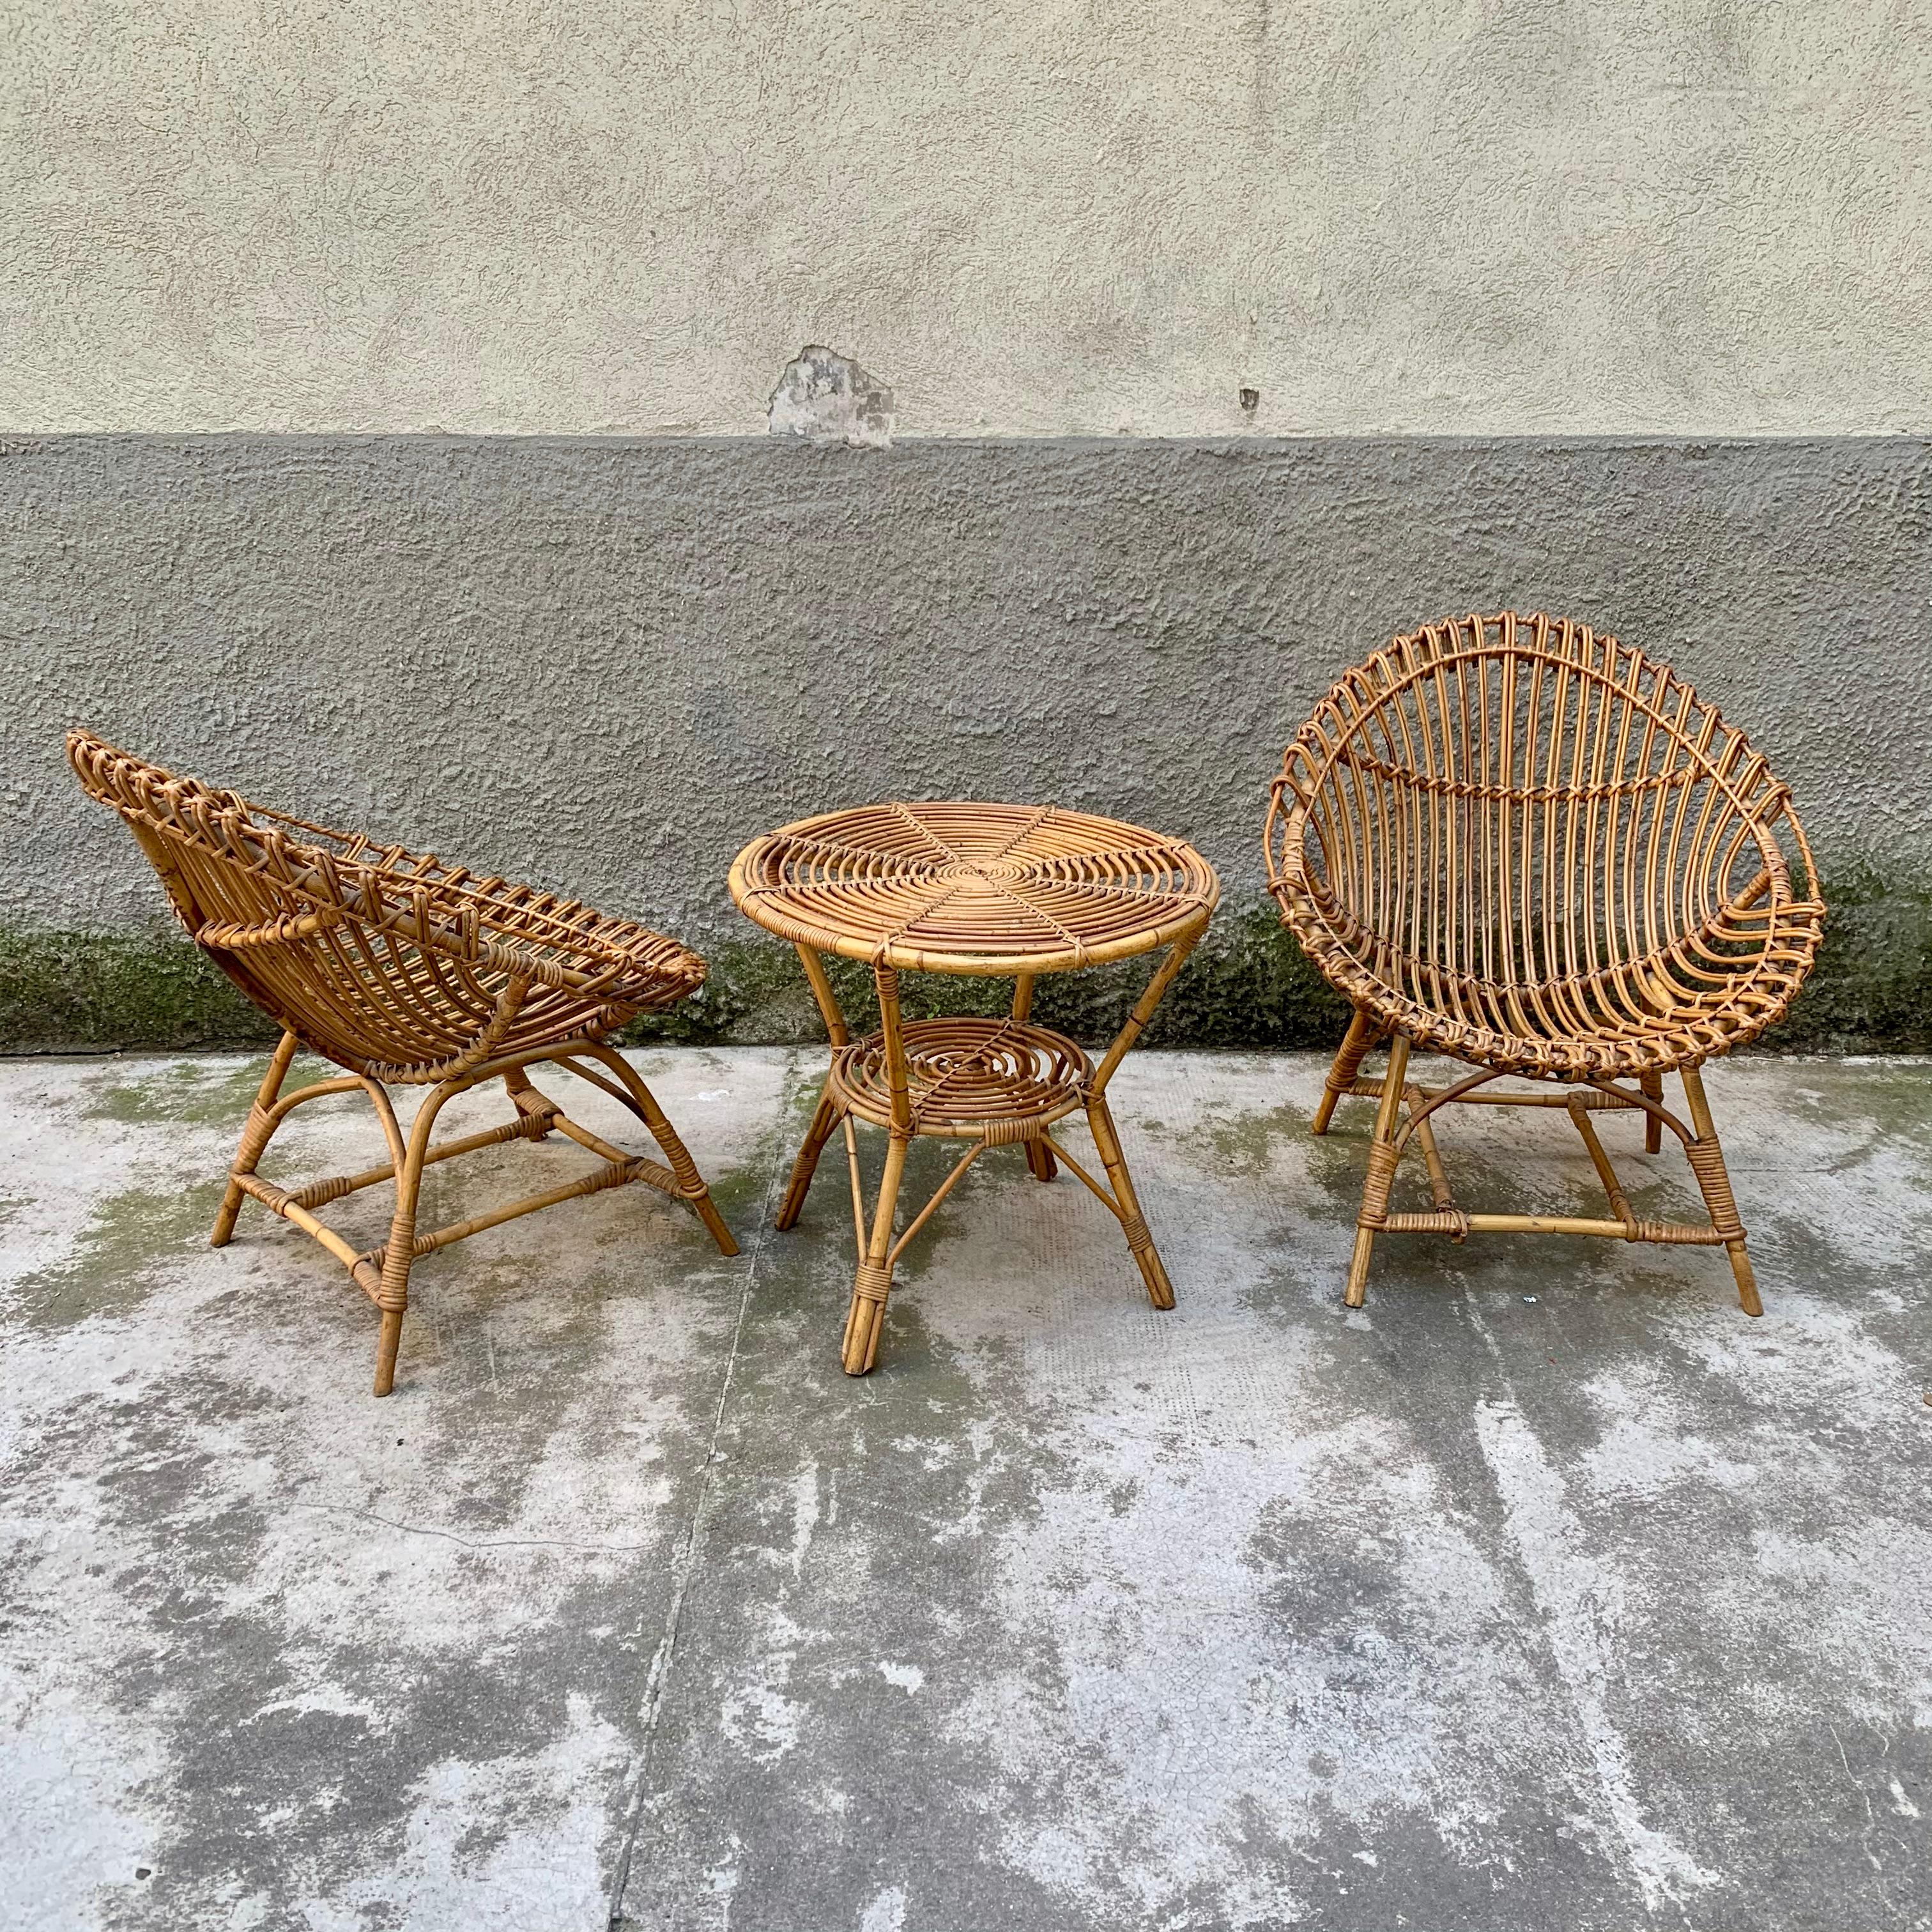 Vintage-Set, bestehend aus 2 Wannenstühlen und einem Couchtisch aus Bambus und geflochtenem Rattan.
Wahrscheinlich italienische Produktion, aus den 1950er Jahren.
Sie befinden sich in einem sehr guten kosmetischen Zustand, wobei einer der beiden